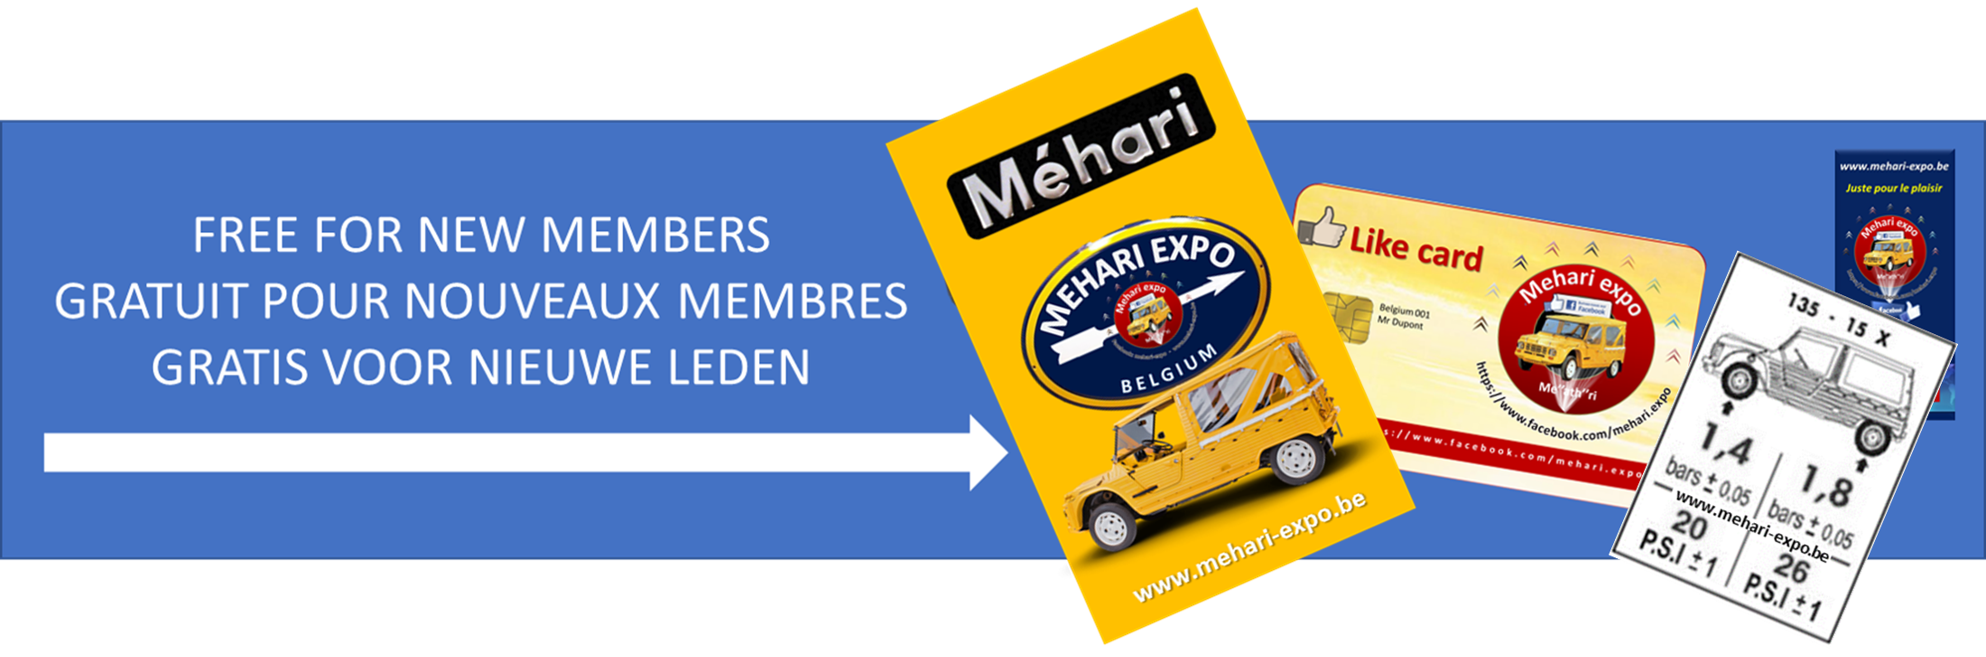 mehari expo member membre lid